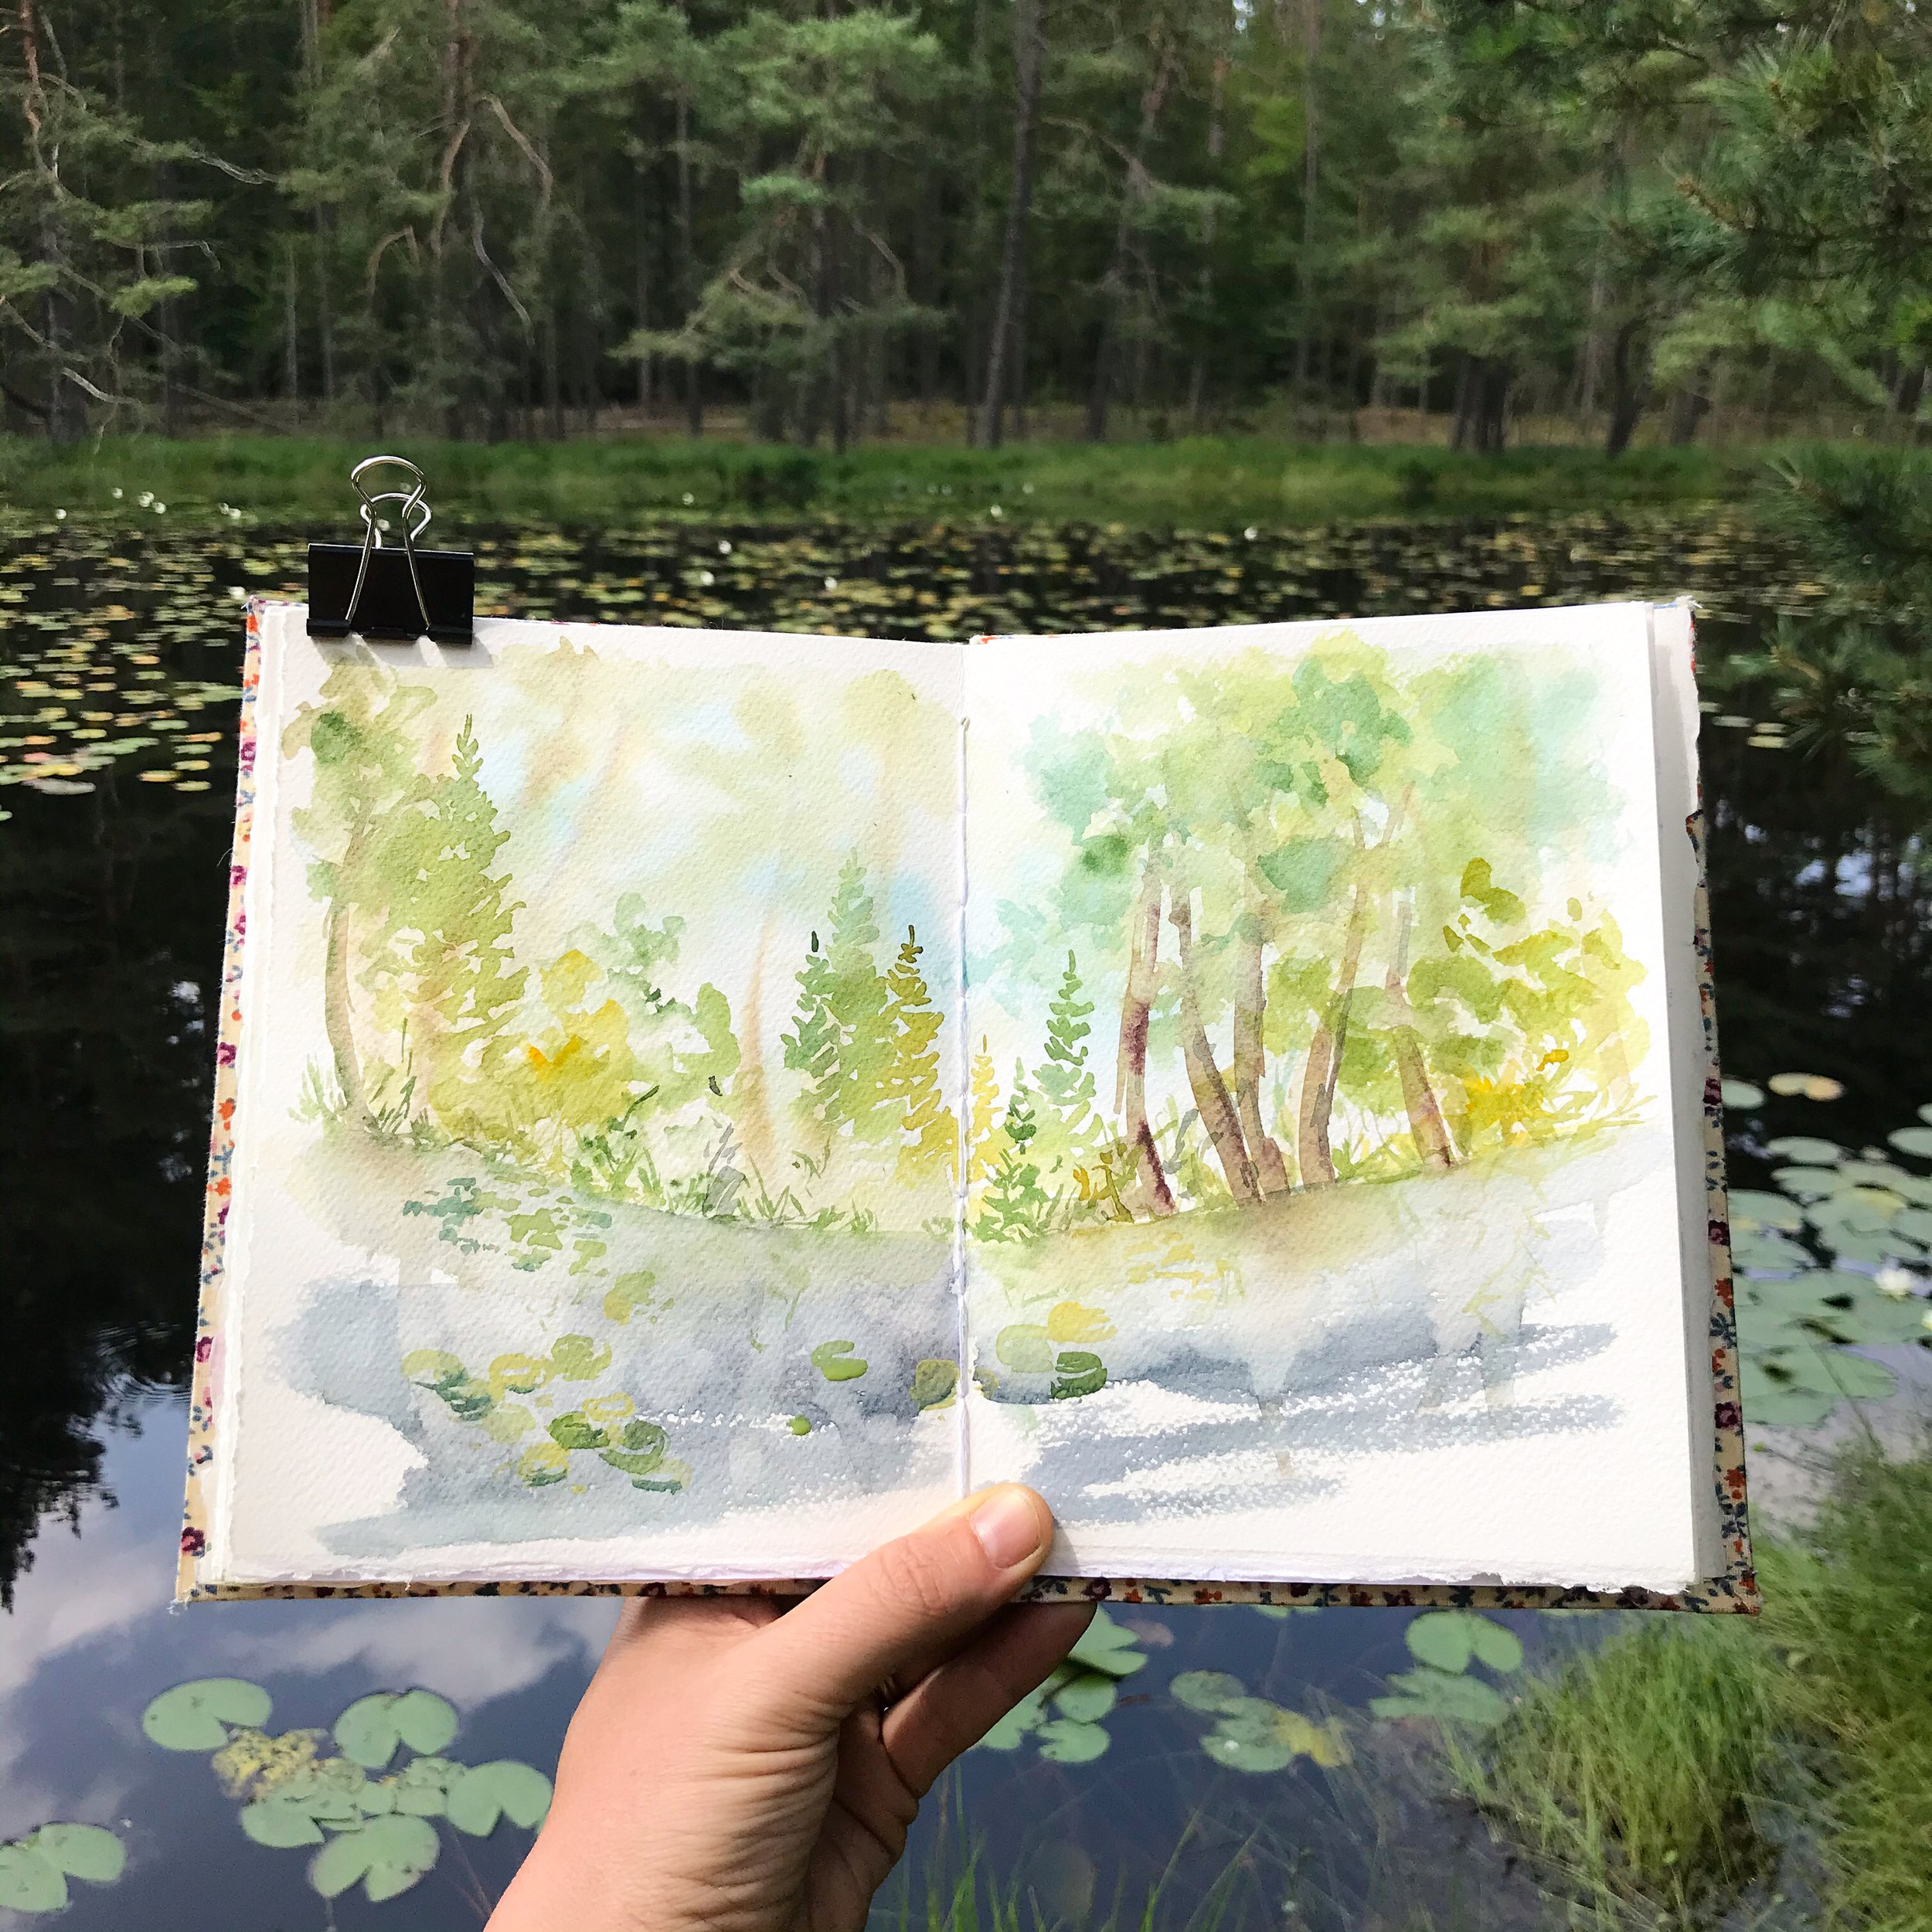 Mon carnet de voyage à l'aquarelle - watercolor sketchbook flip